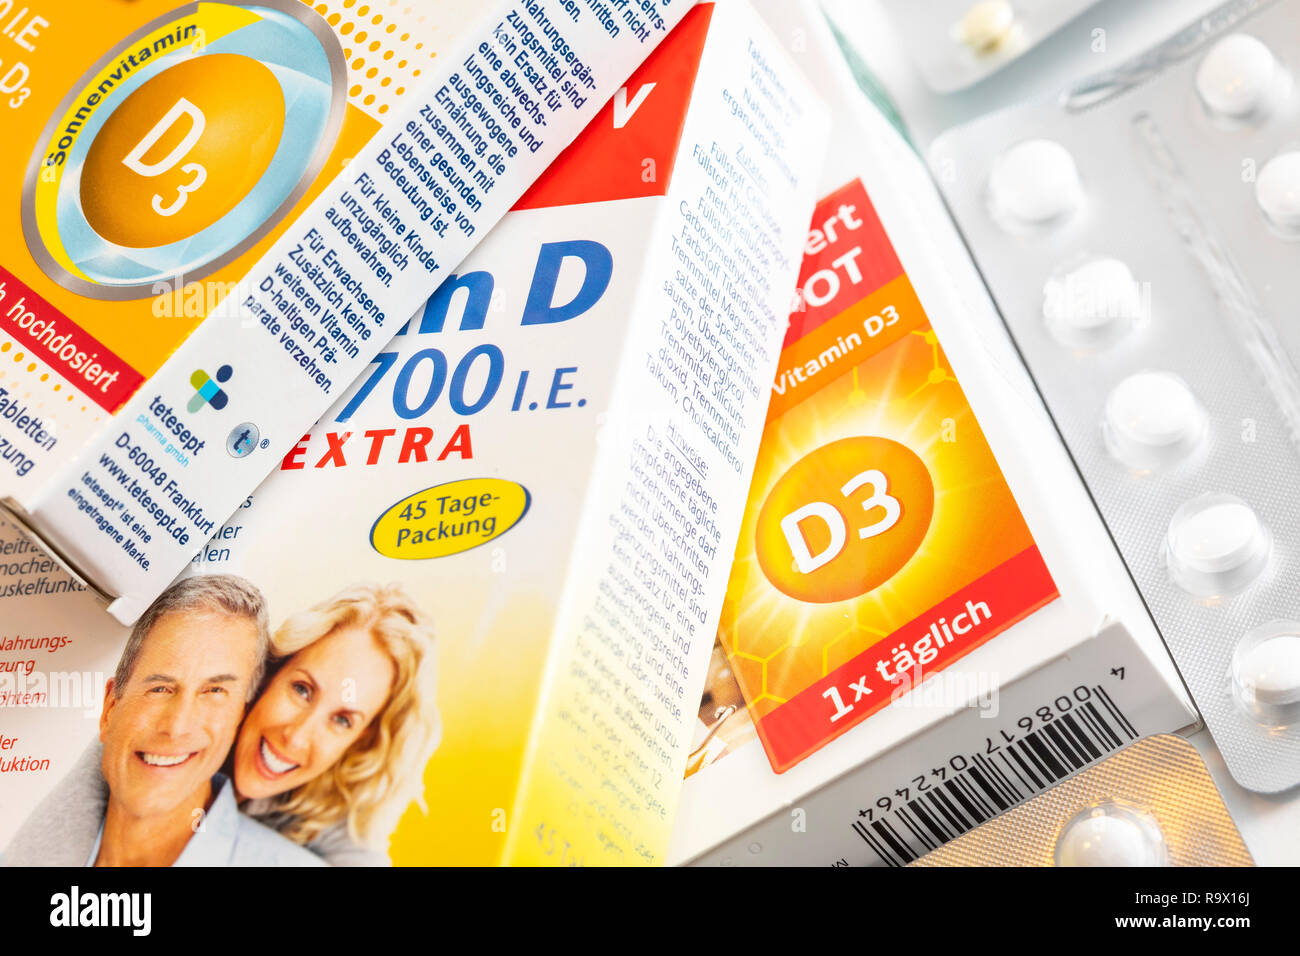 La vitamina D compresse pack, la preparazione è destinata ad integrare la carenza di vitamina D, da bassa radiazione solare, per esempio in inverno, Foto Stock